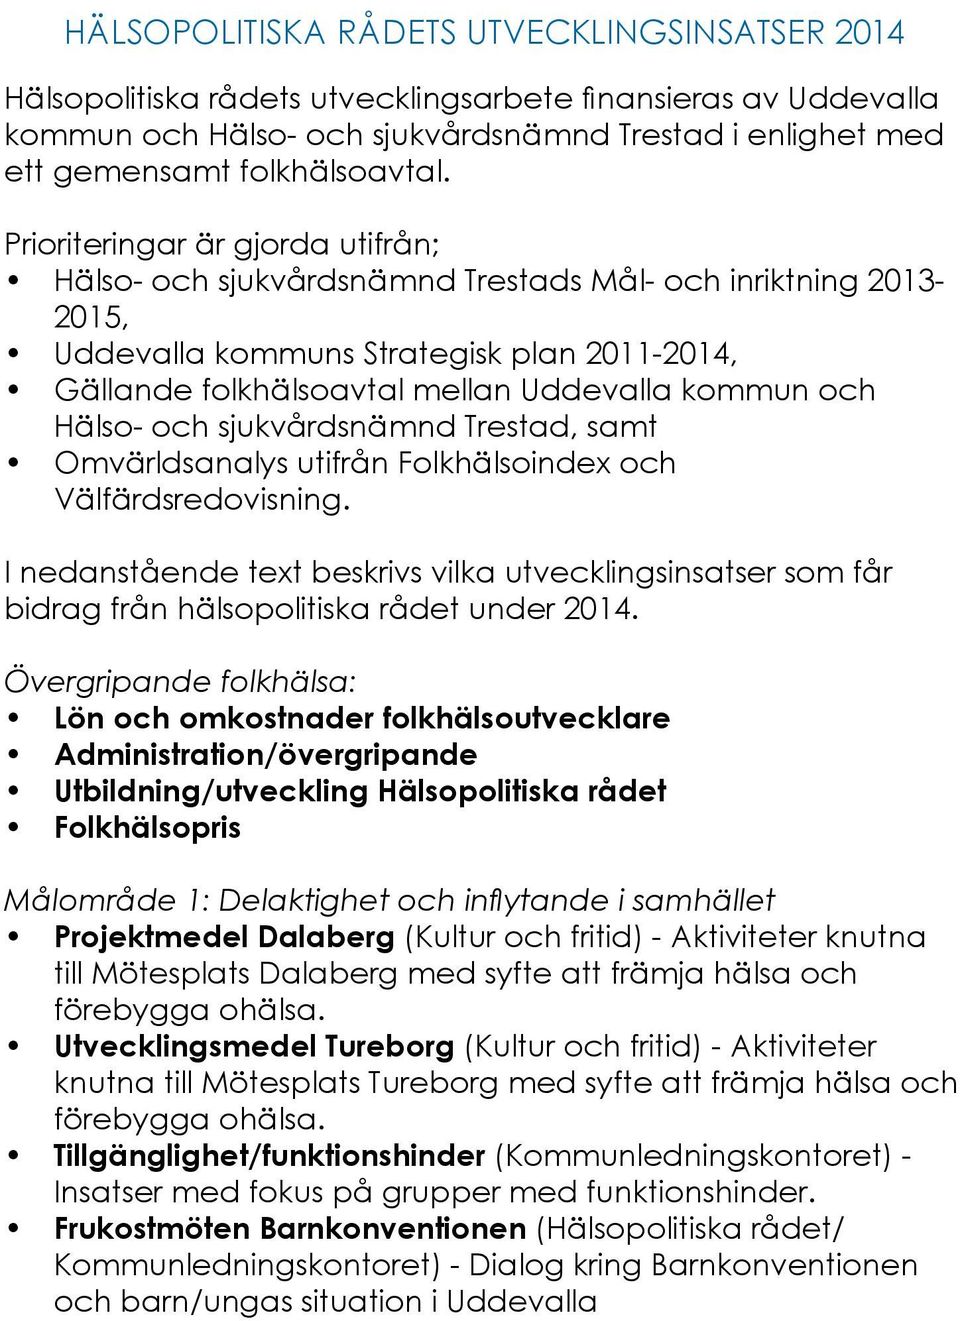 Prioriteringar är gjorda utifrån; Hälso- och sjukvårdsnämnd Trestads Mål- och inriktning 2013-2015, Uddevalla kommuns Strategisk plan 2011-2014, Gällande folkhälsoavtal mellan Uddevalla kommun och